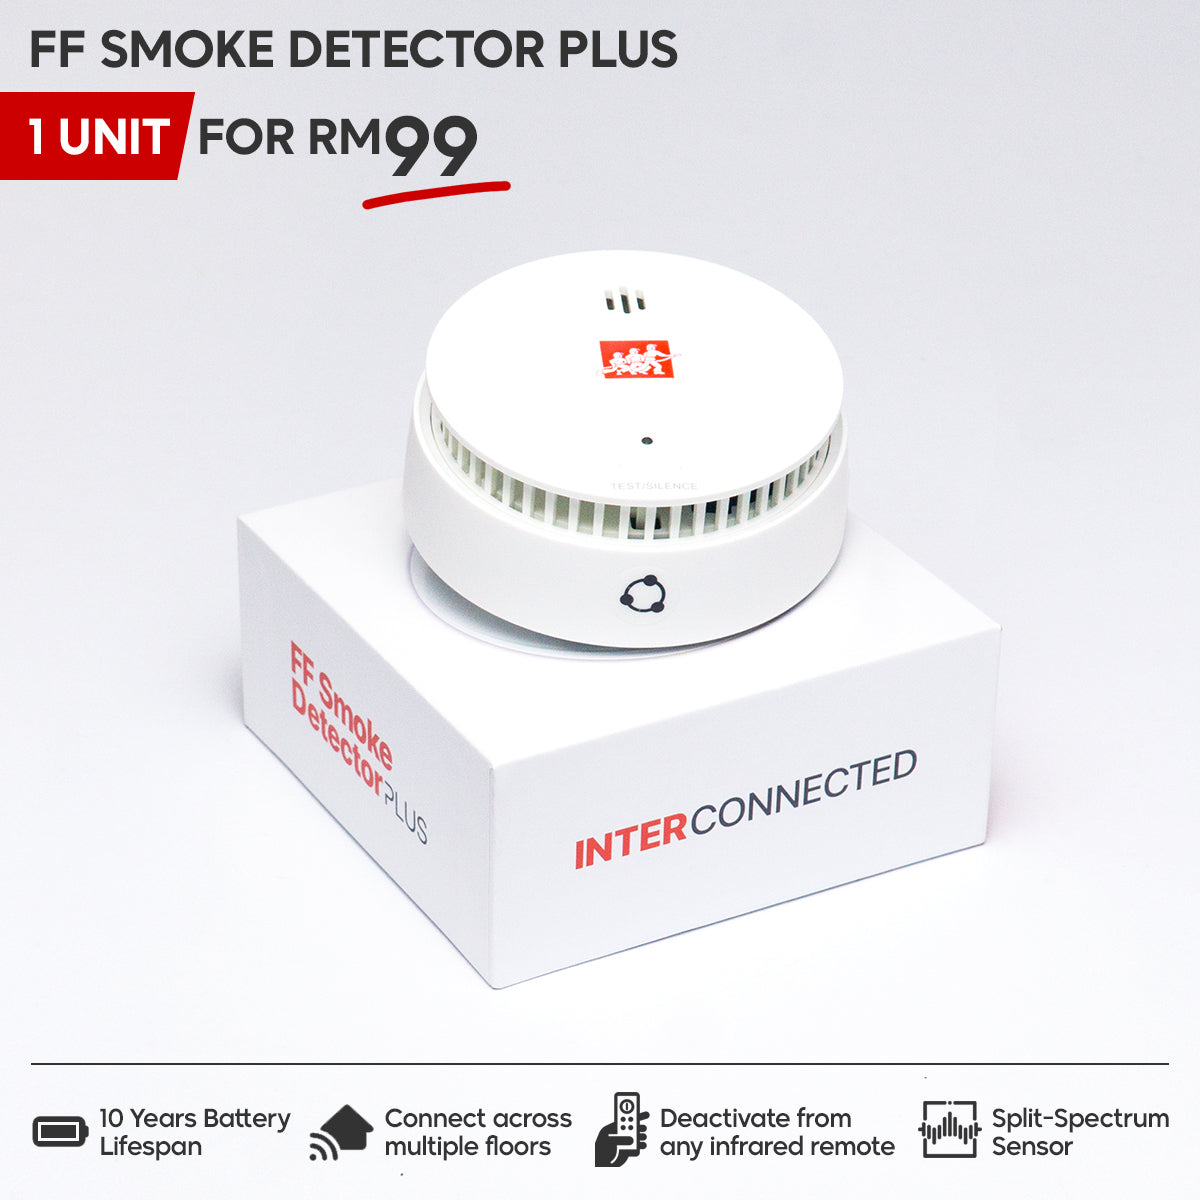 FF Smoke Detector PLUS